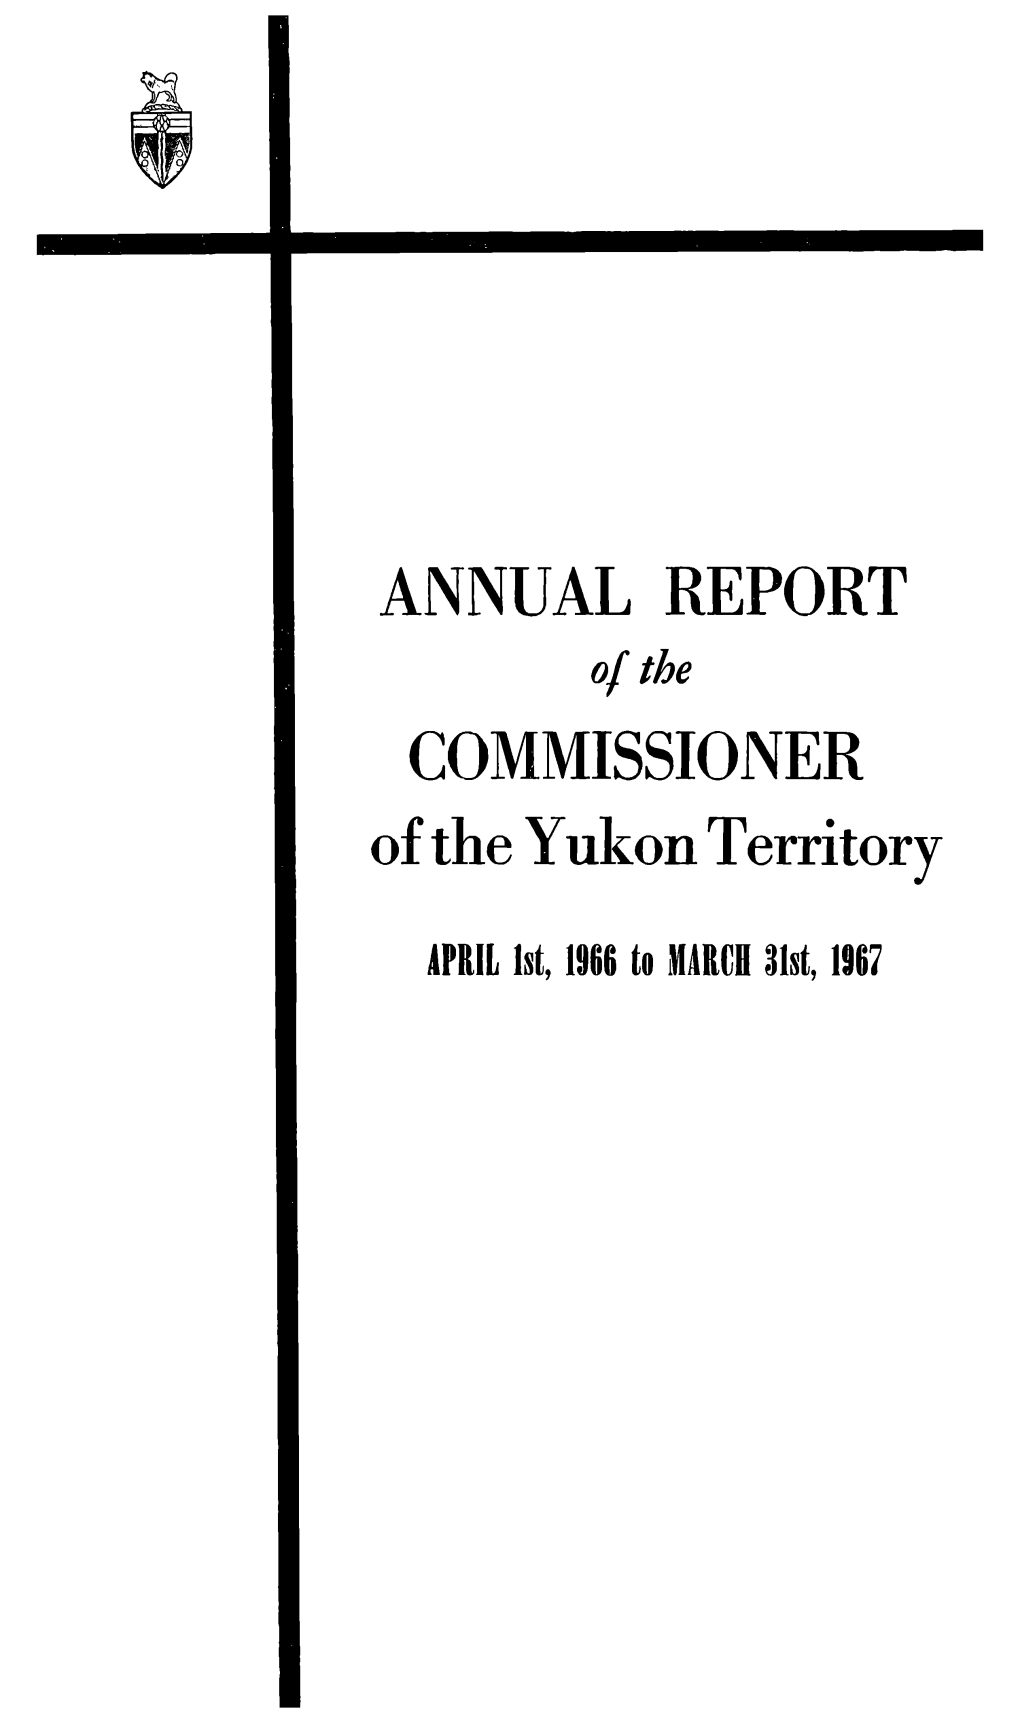 Annual Report Commissioner